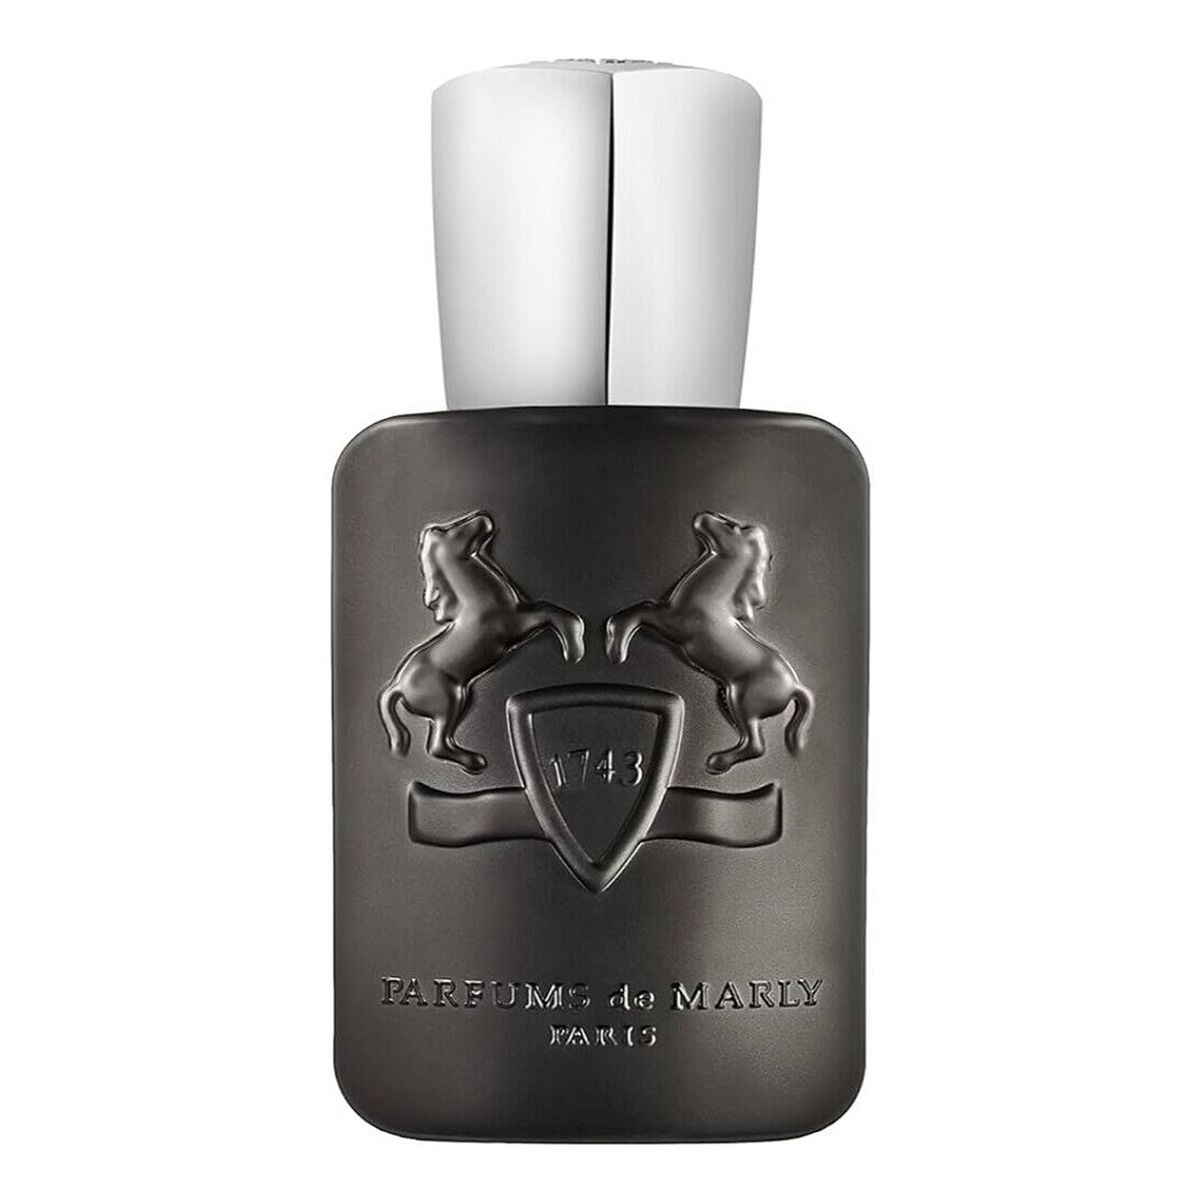 Parfums de Marly Pegasus Exclusif Perfumy spray 75ml